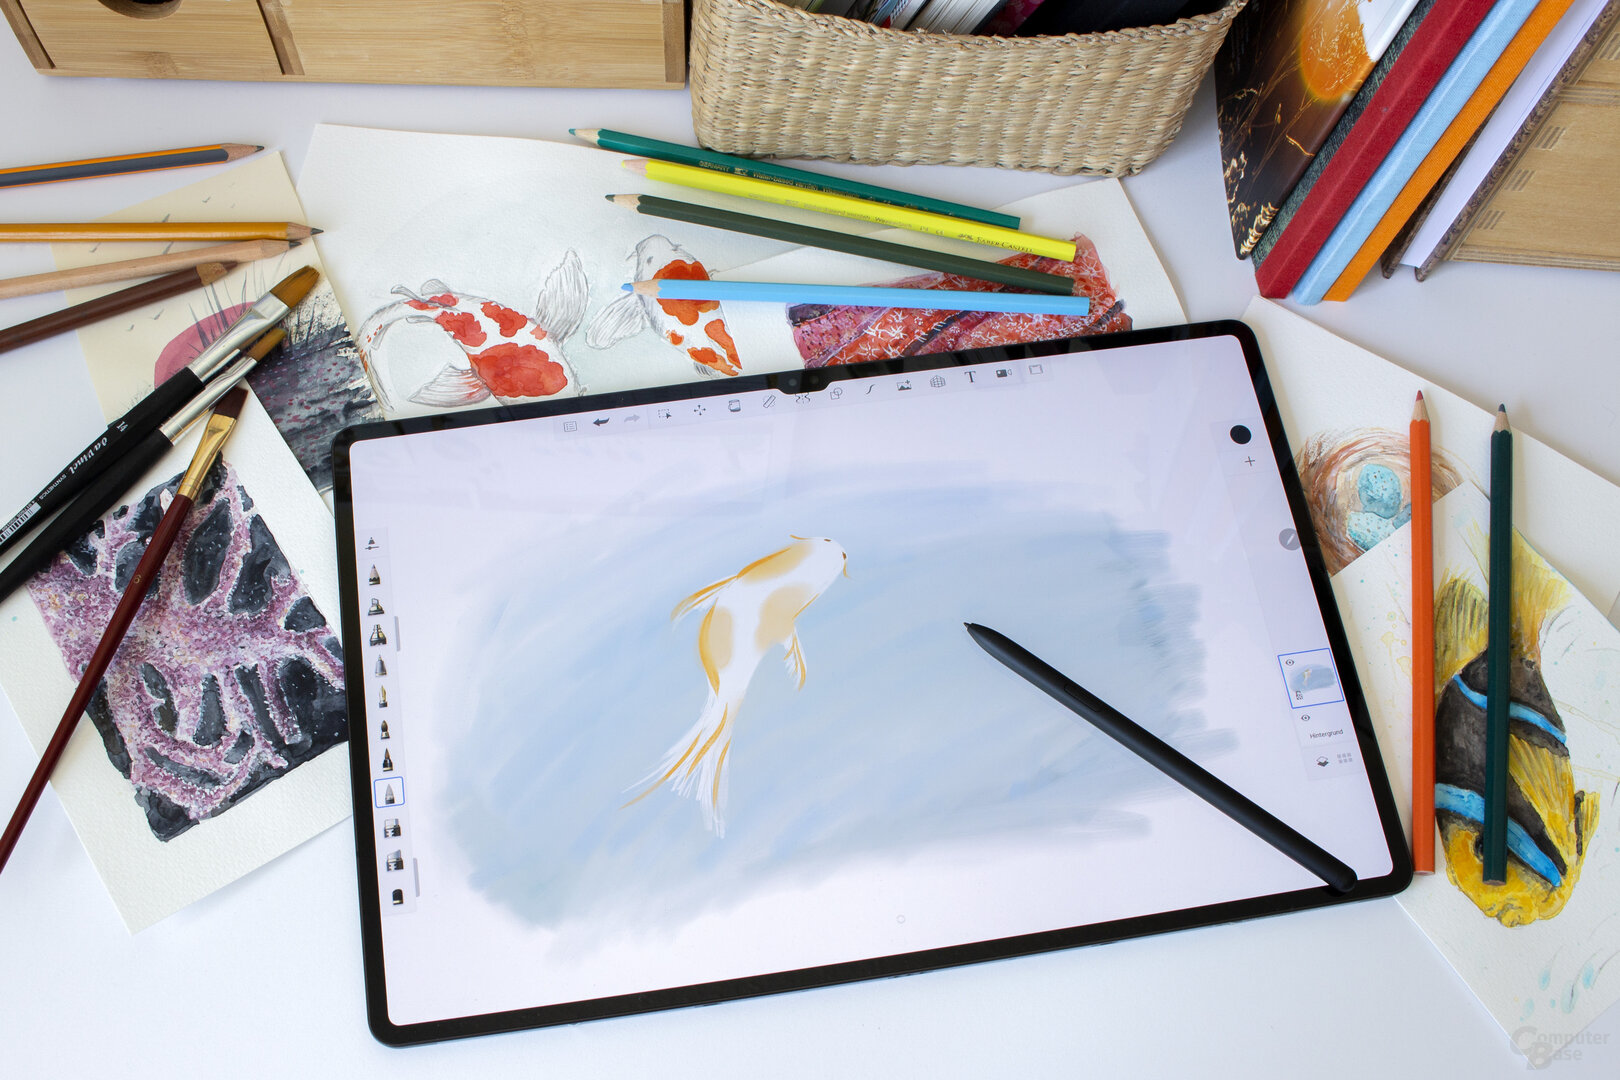 Dank der guten Stiftunterstützung geht das Zeichnen mit dem Galaxy Tab S8 Ultra sehr einfach von der Hand